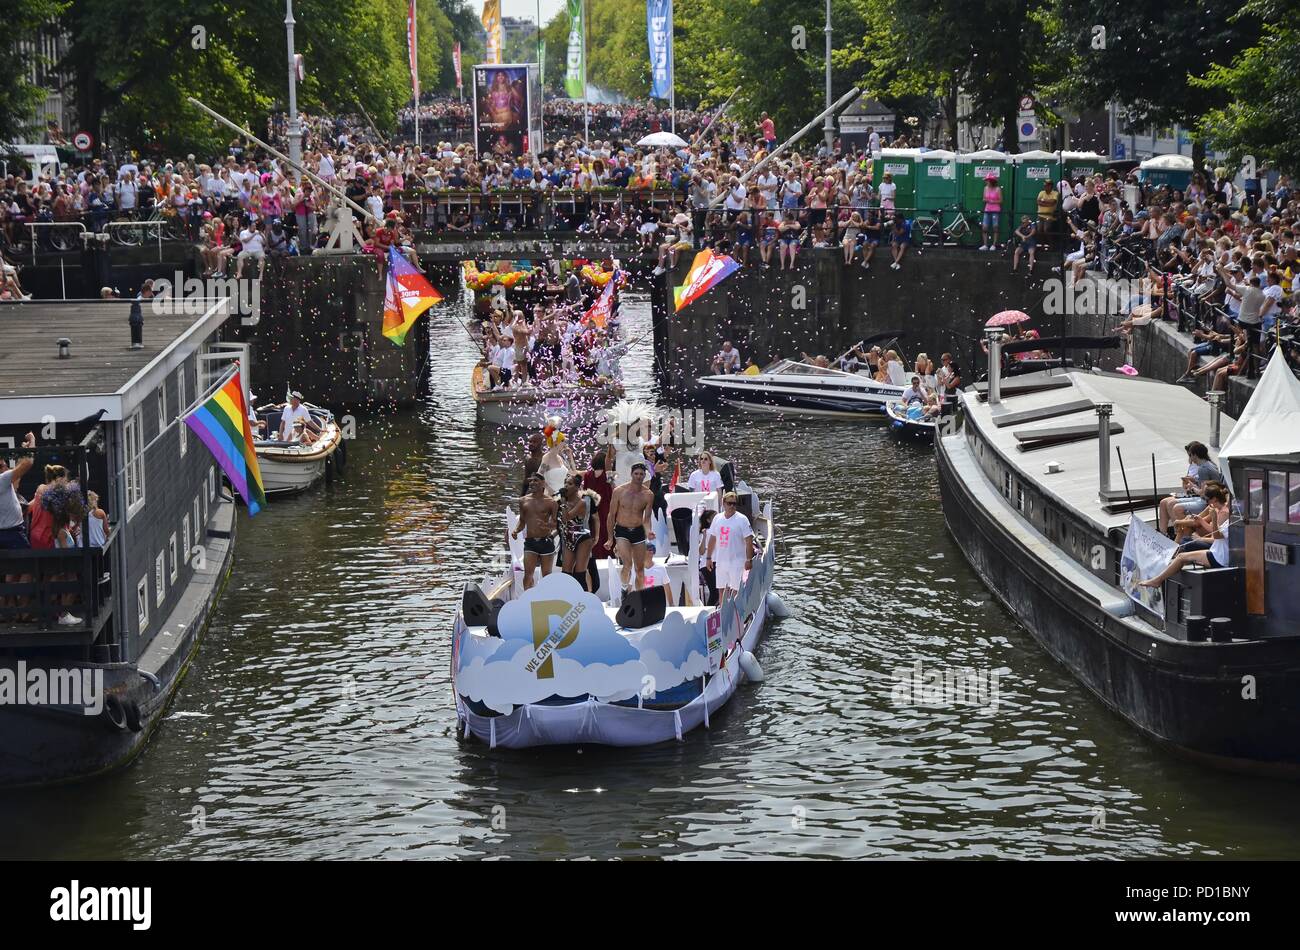 Amsterdam, Holanda - Agosto 4, 2018: El barco de plomo (número 0) llevando el tema slogen, "Podemos ser héroes" en el momento de la embarcación pride parade Crédito: Adam Szuly Fotografía/Alamy Live News Foto de stock